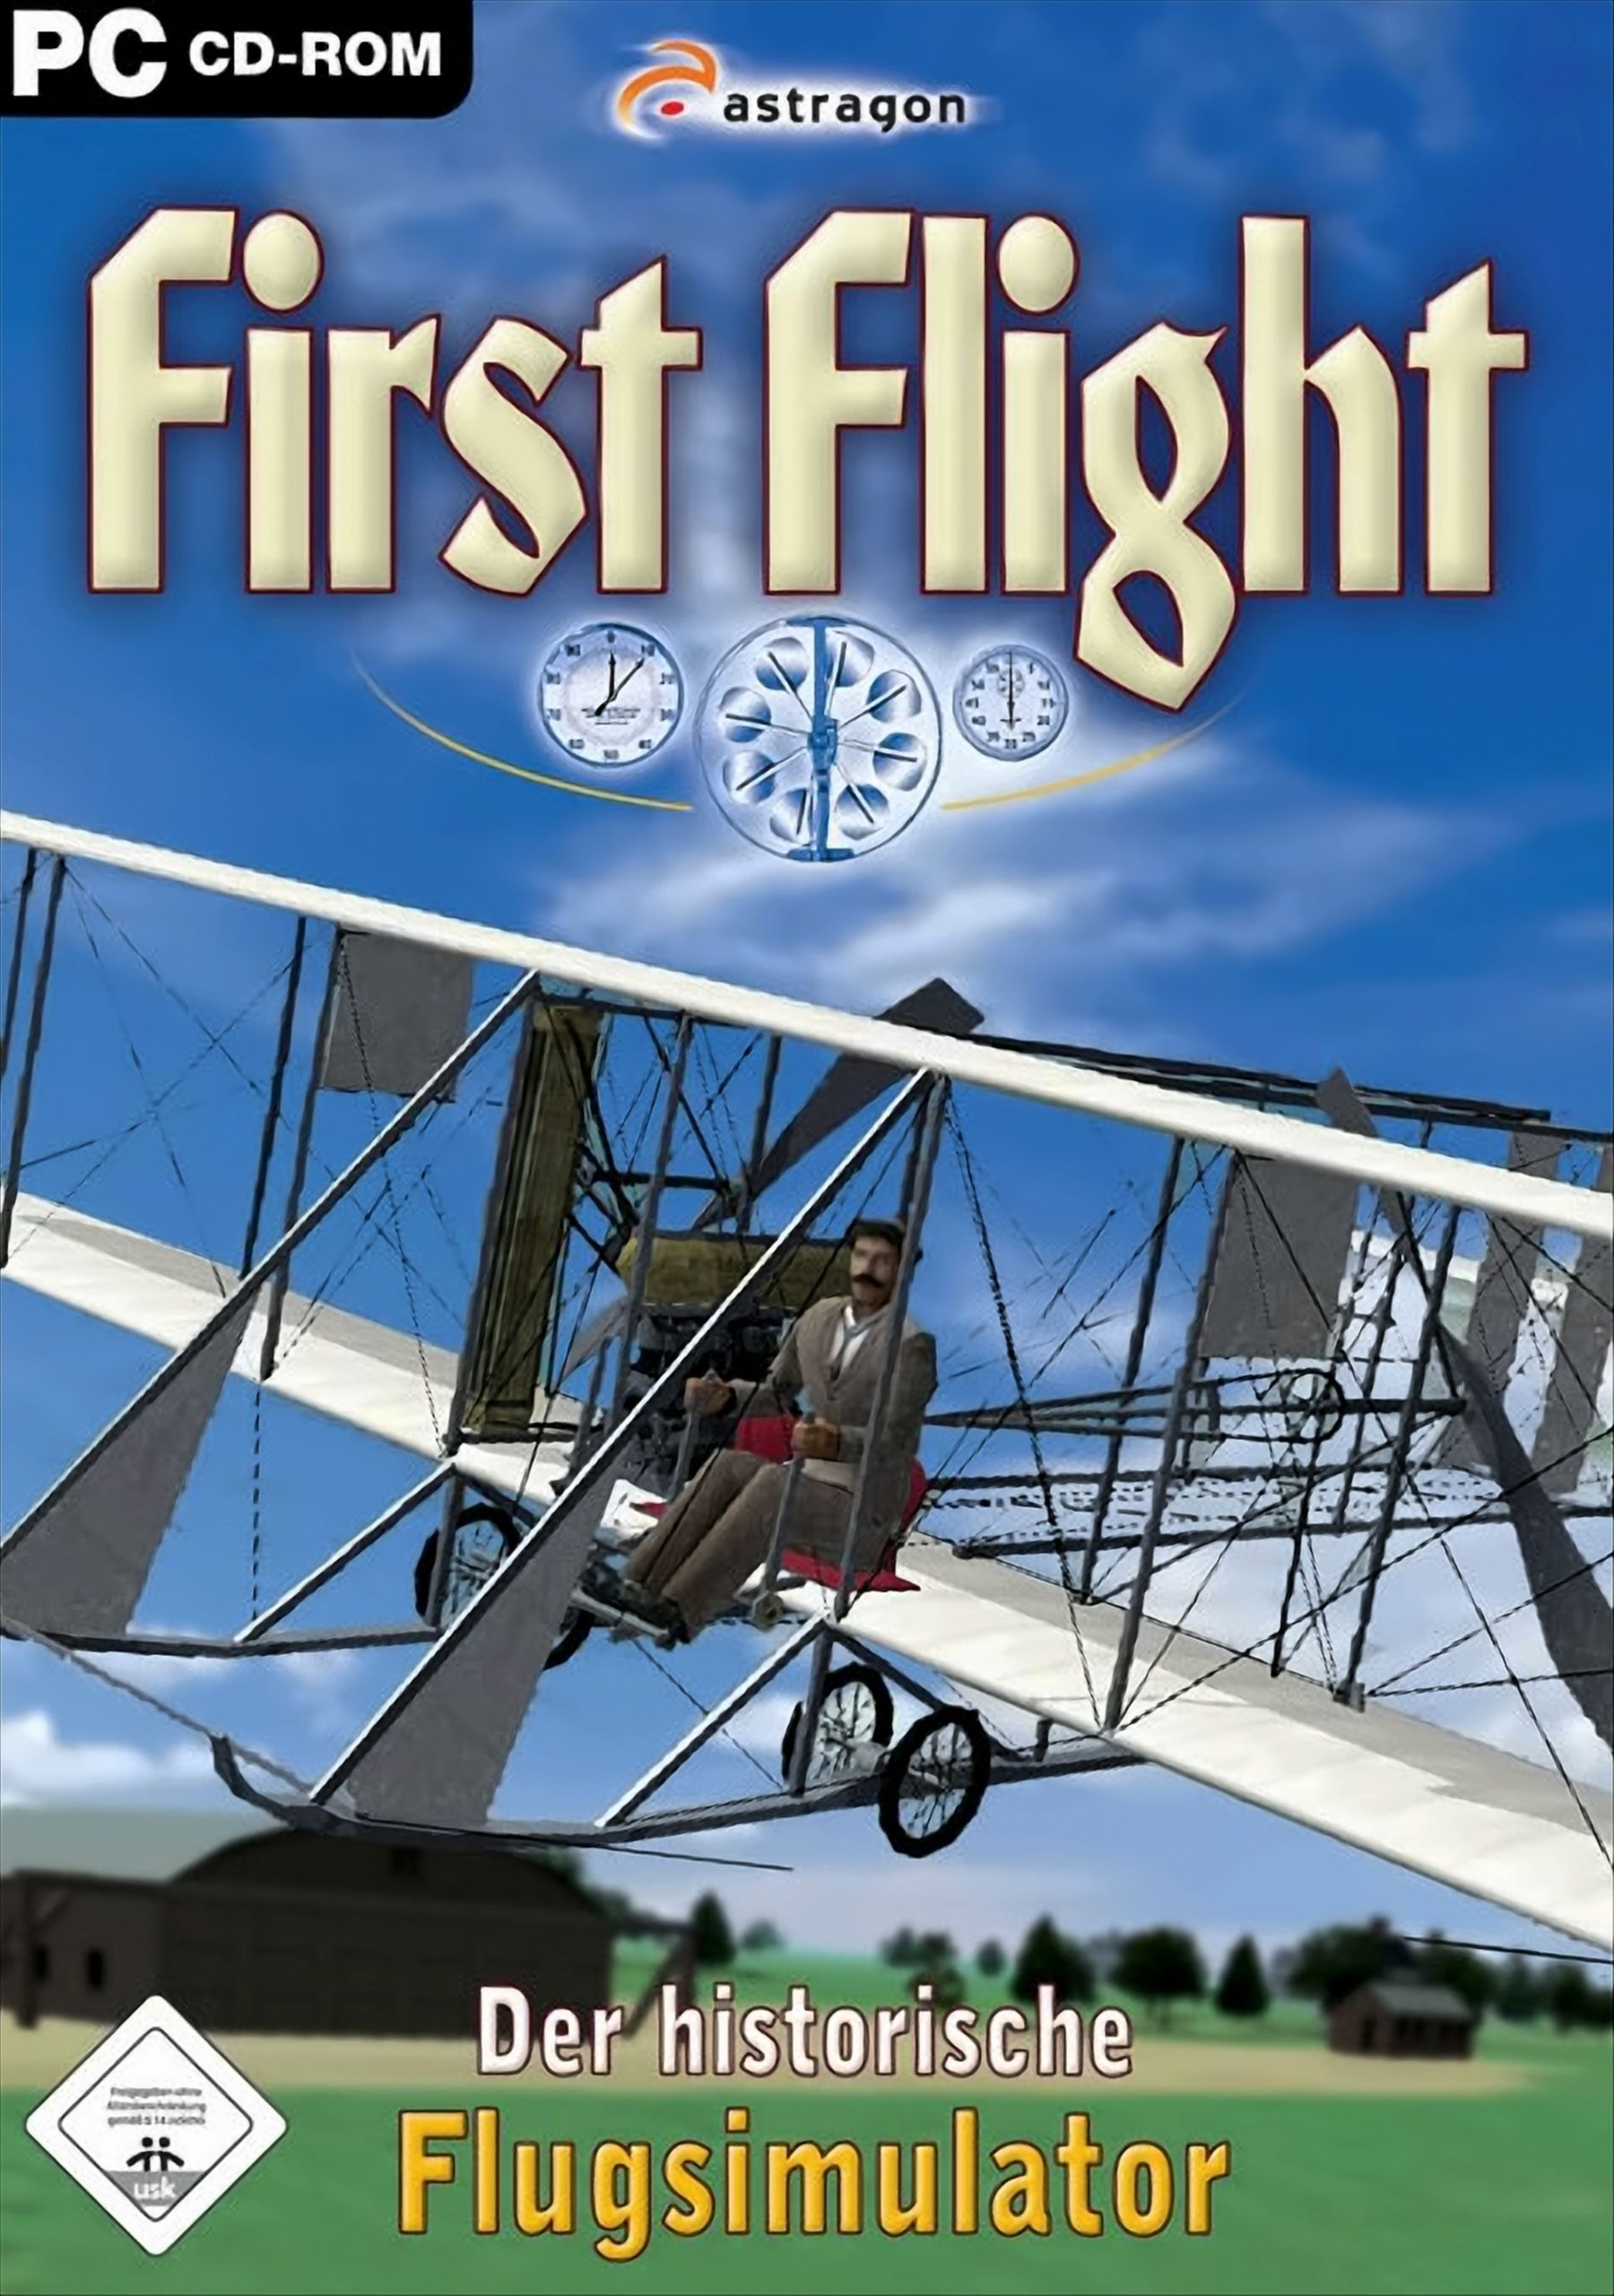 Der - Flugsimulator historische Flight - First [PC]